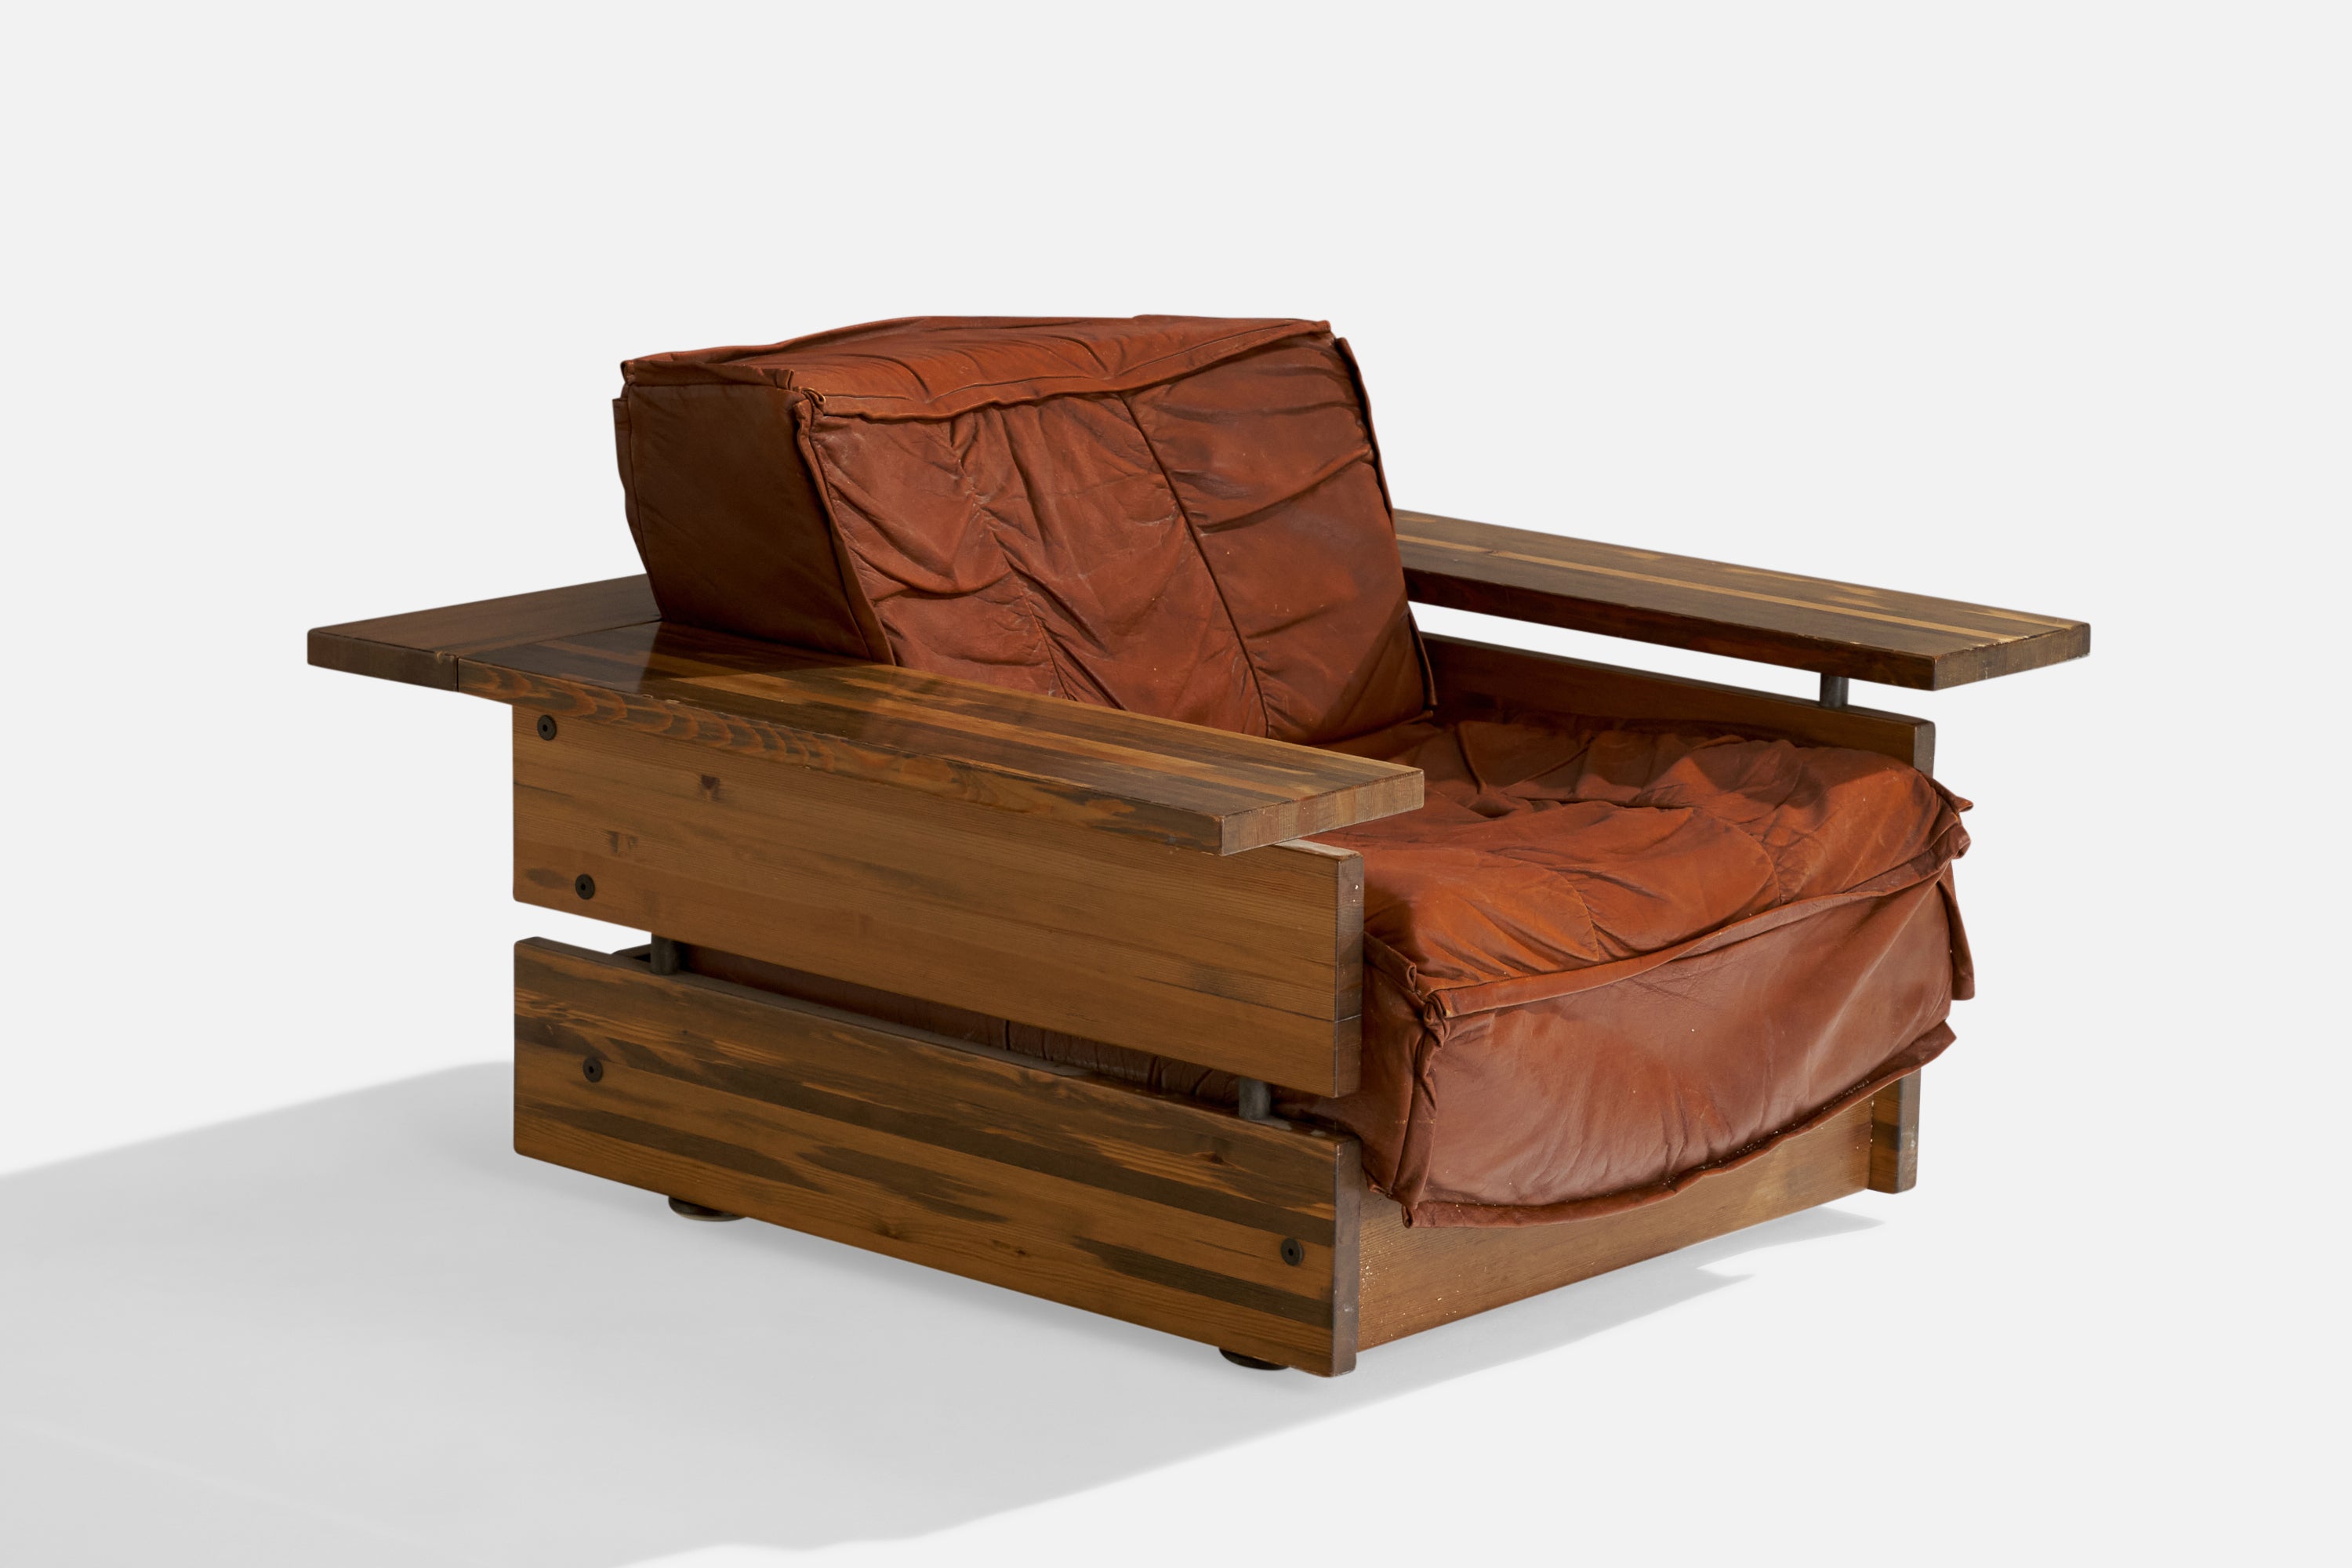 Chaise de salon en pin et en cuir brun, conçue et produite par Hämeen Kalustaja, Finlande, années 1970.

Hauteur d'assise 14